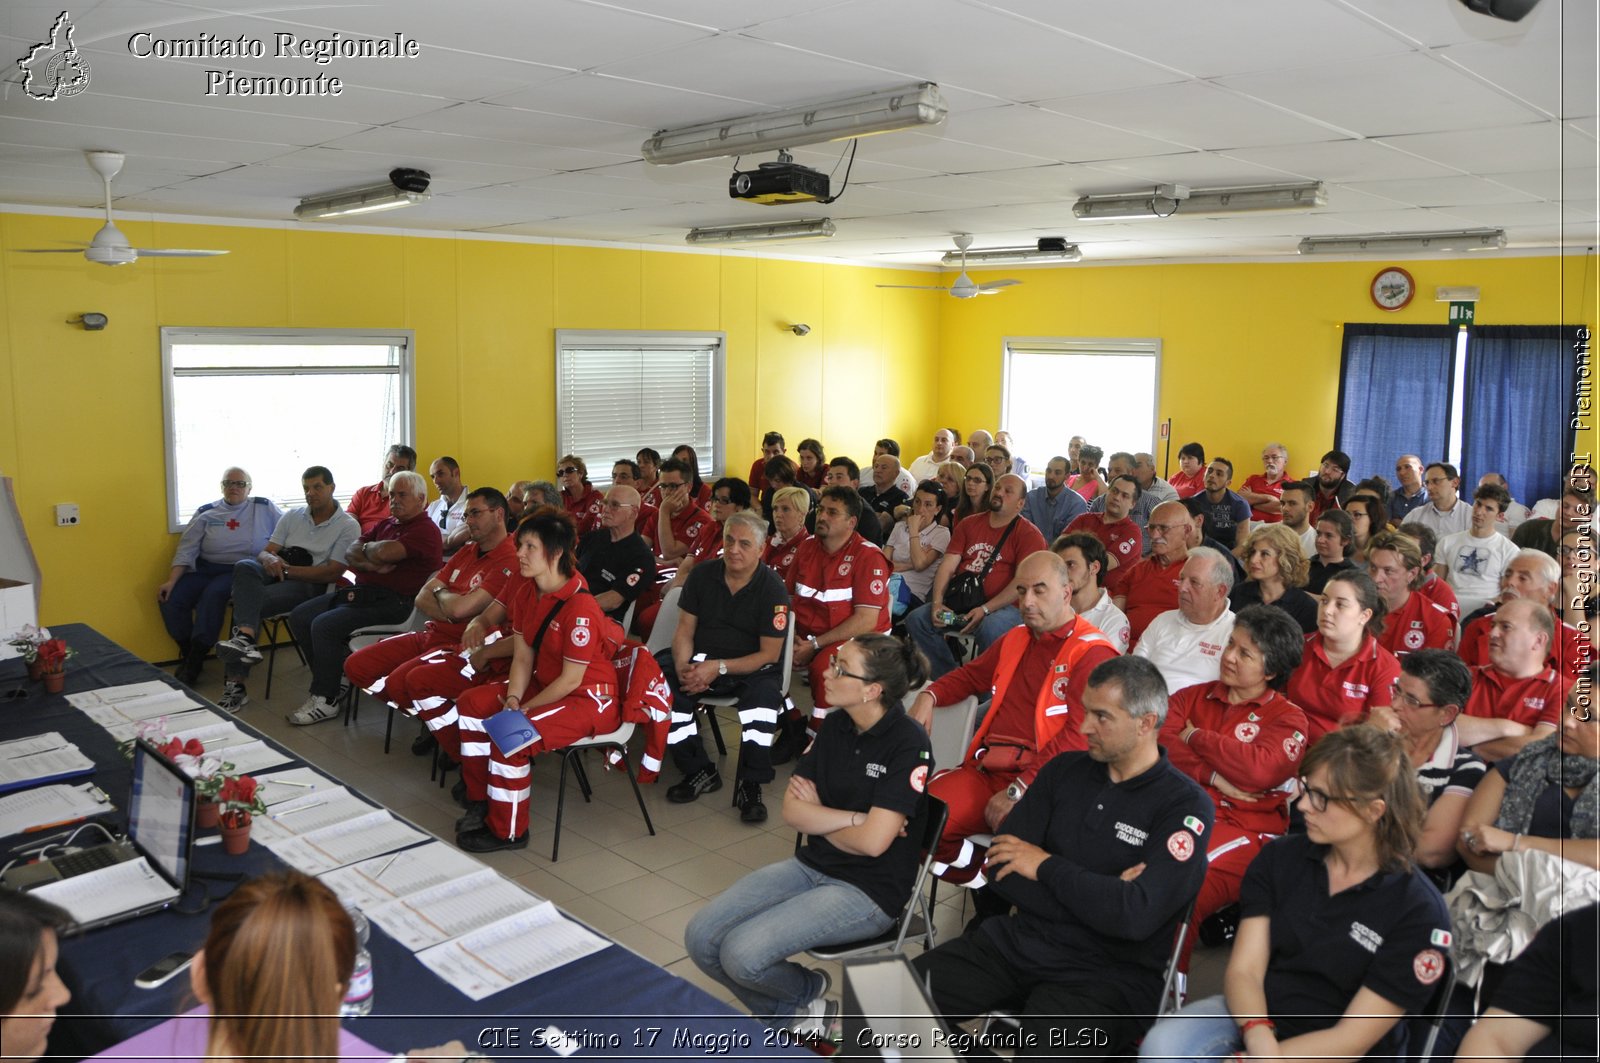 CIE Settimo 17 Maggio 2014 - Corso Regionale BLSD - Comitato Regionale del Piemonte